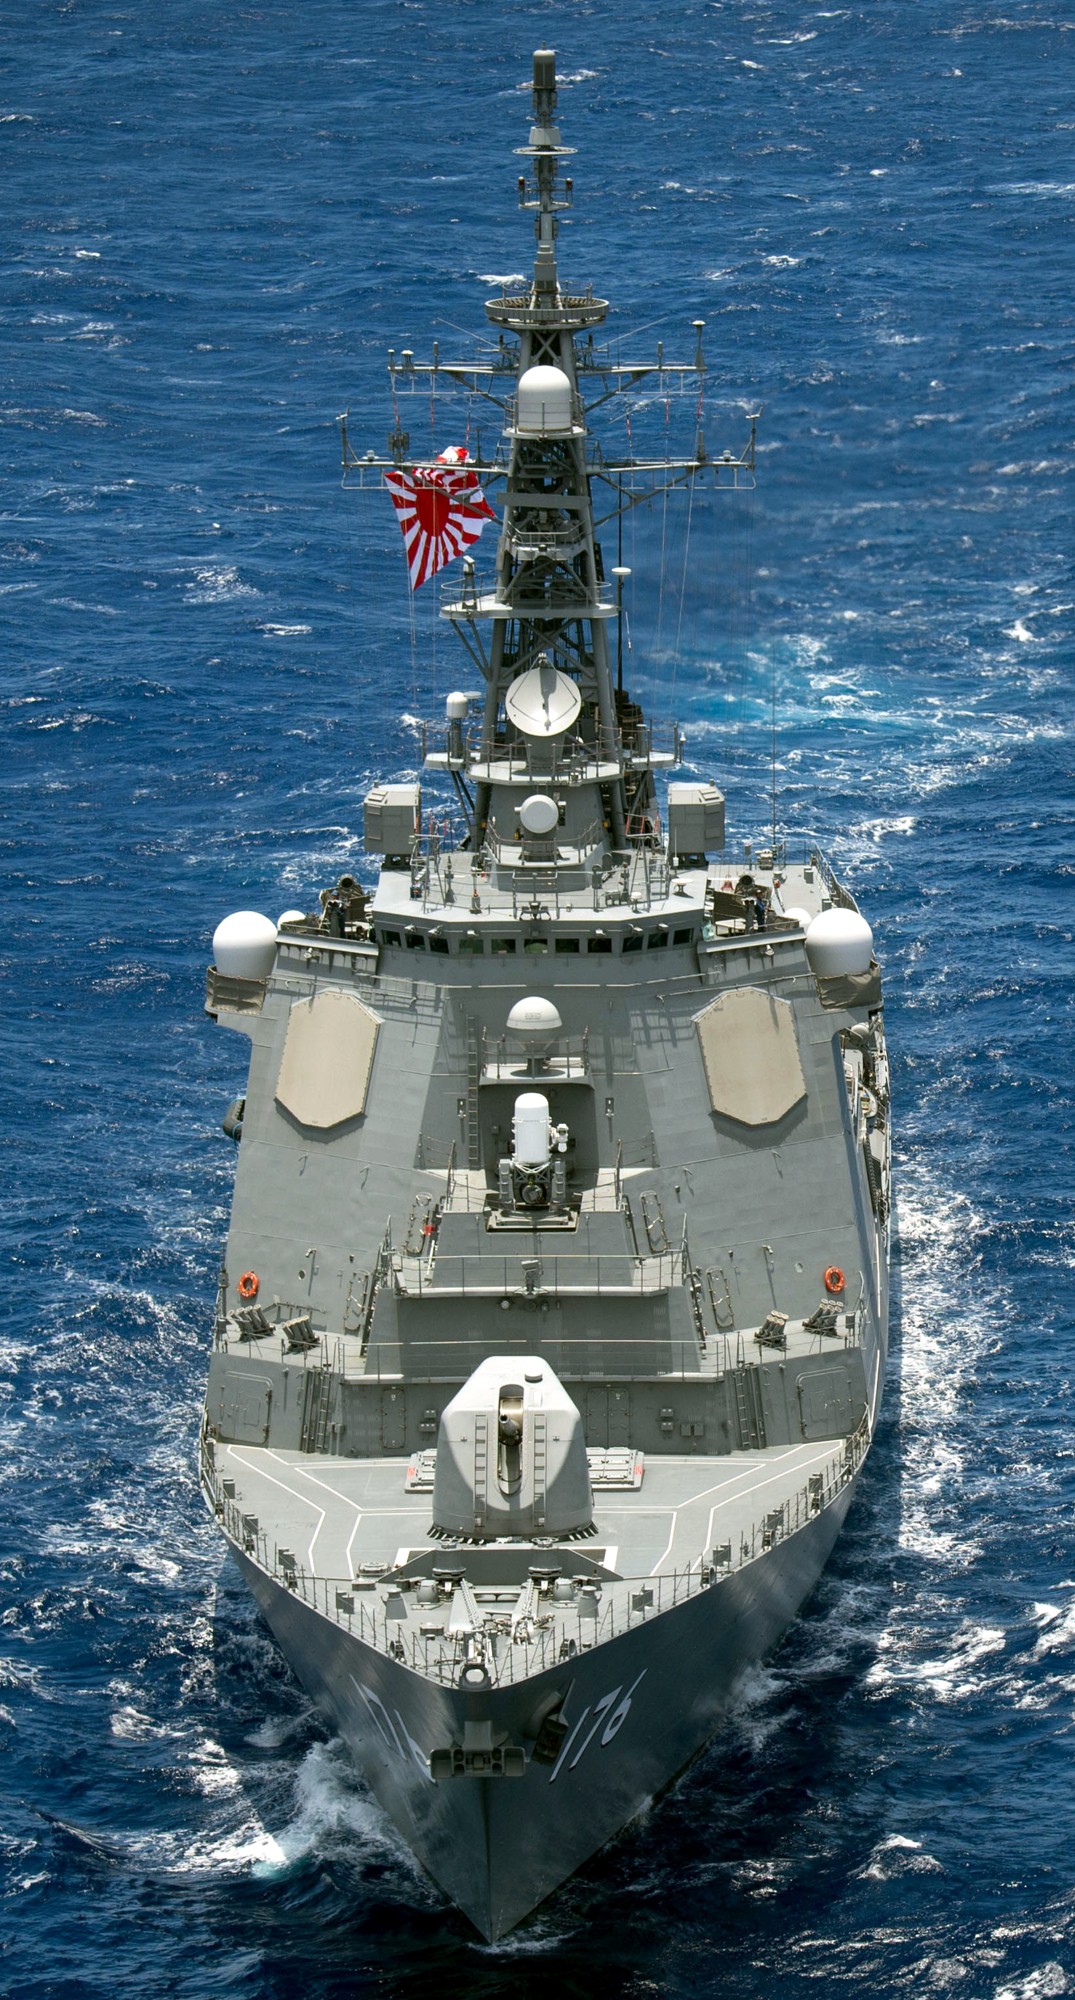 ddg-176 jds chokai kongou class destroyer japan maritime self defense force jmsdf 24